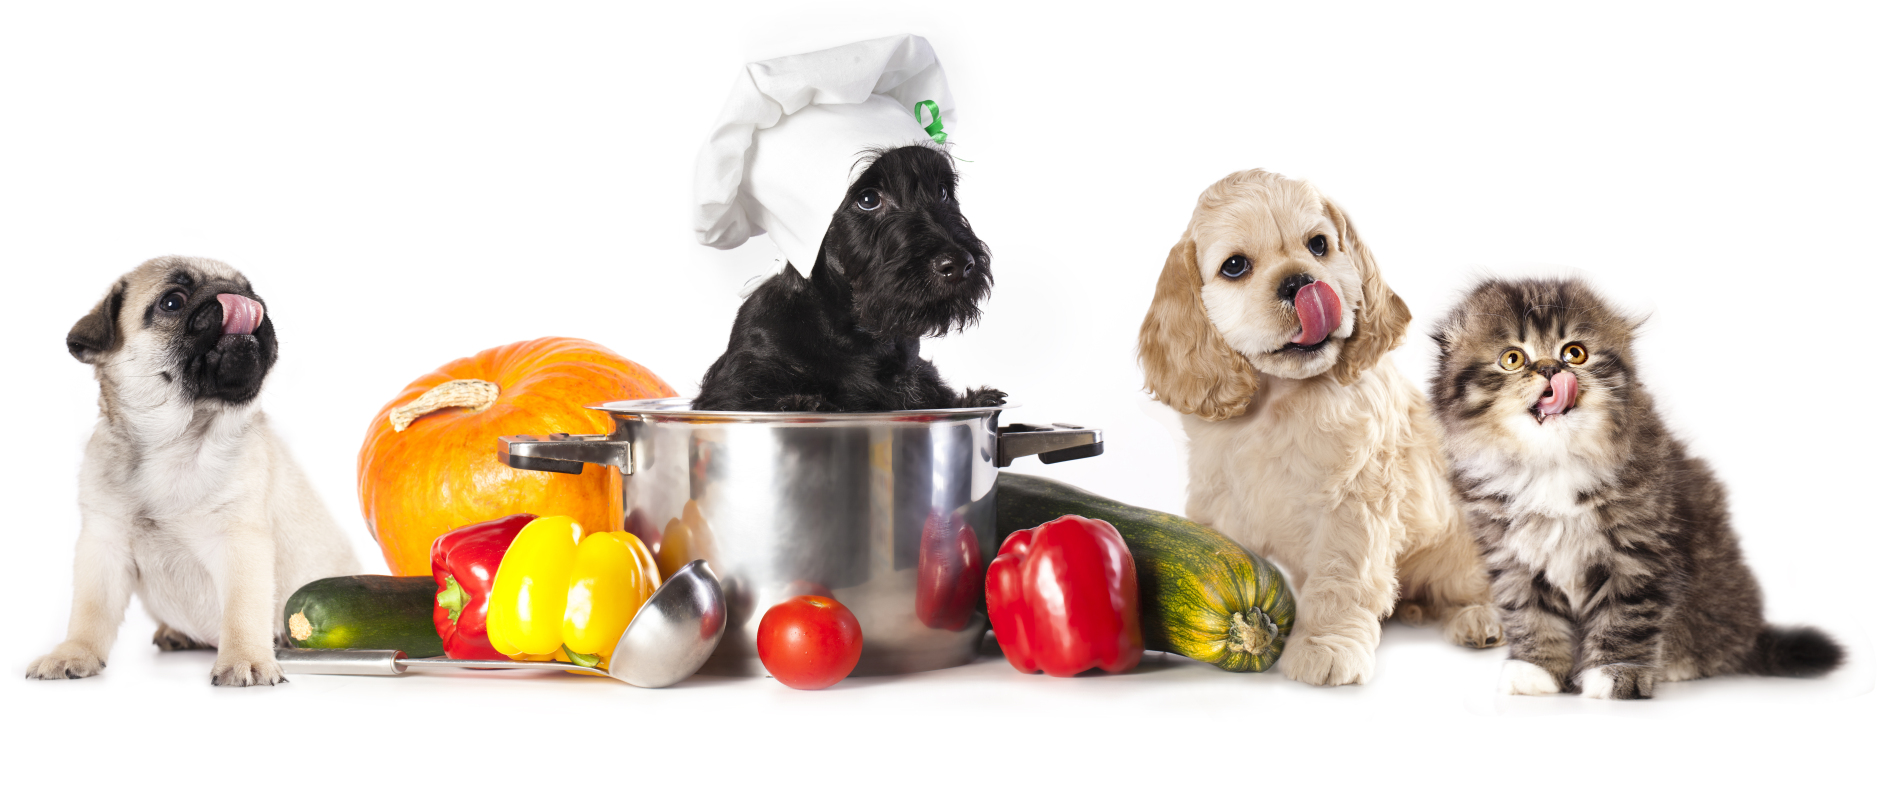 7 продуктов, которыми нельзя кормить собак и кошек